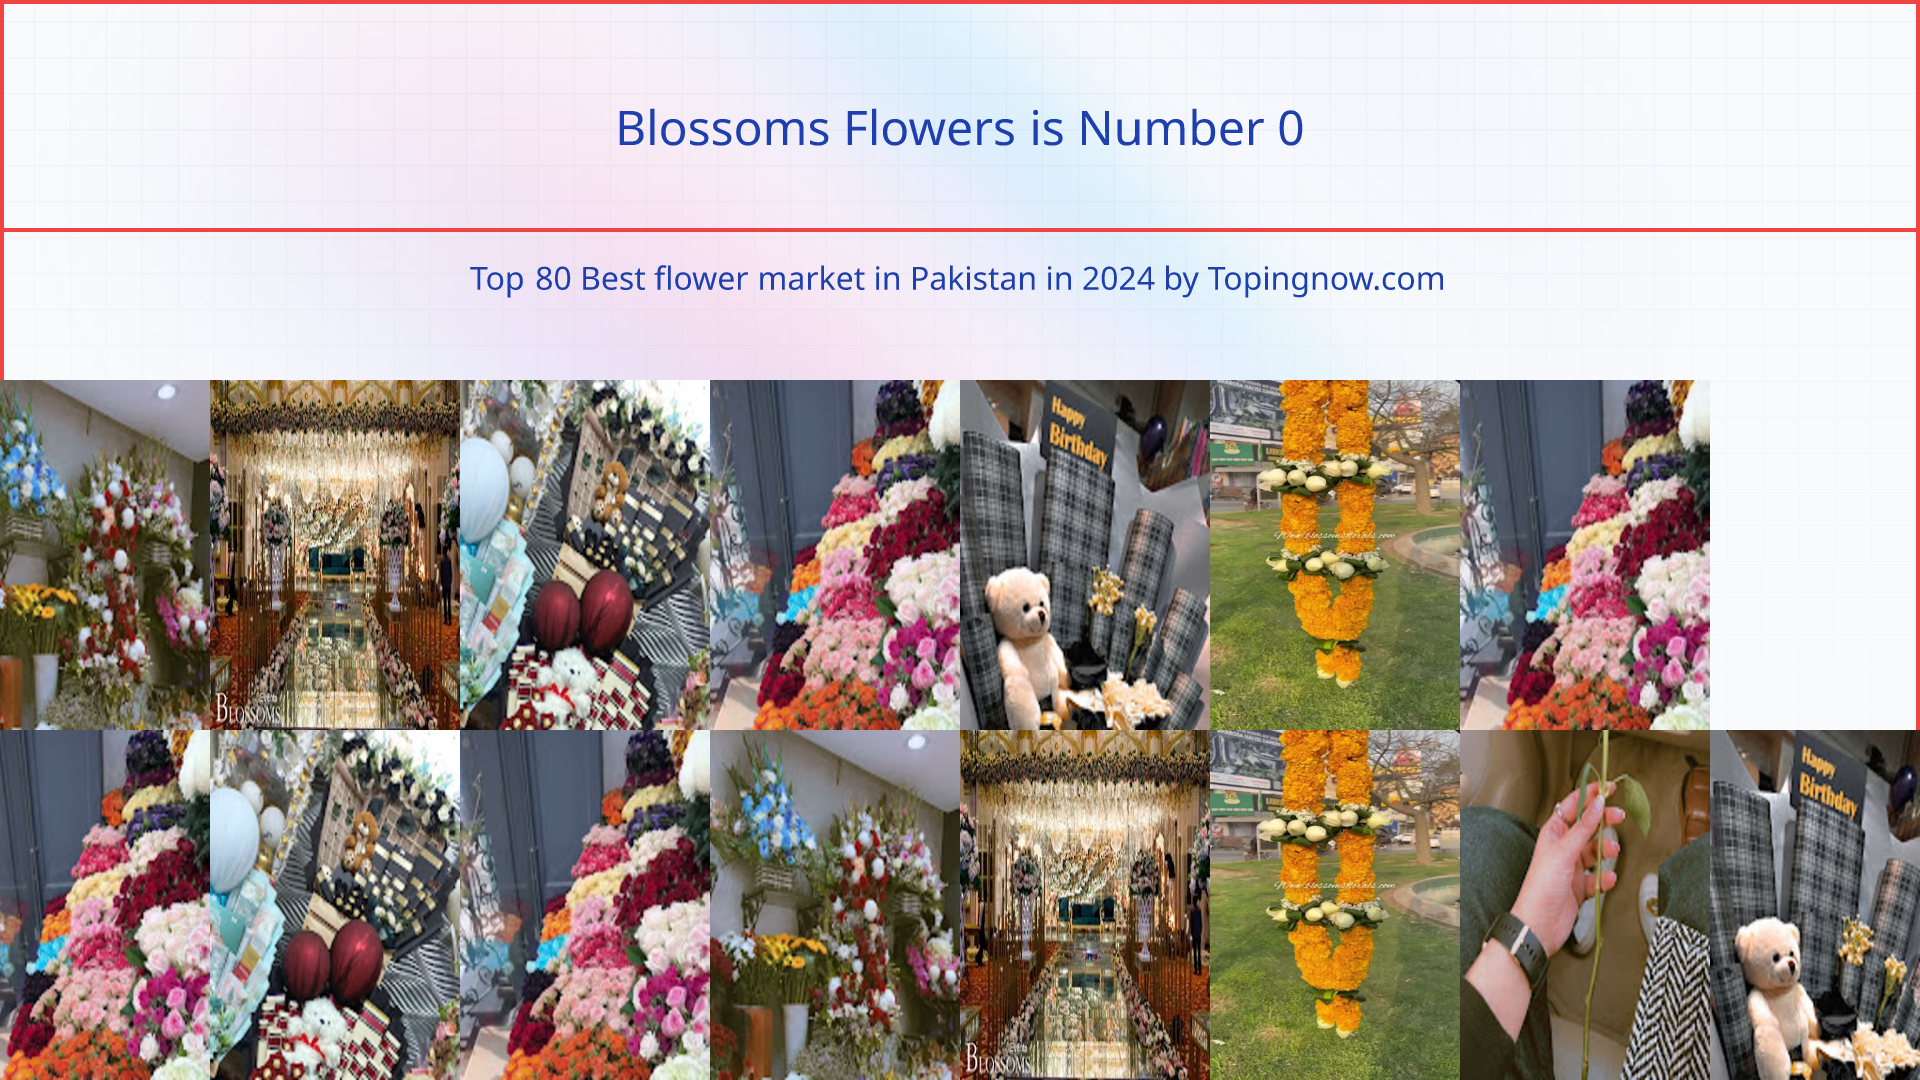 Blossoms Flowers: Top 80 Best flower market in Pakistan in 2024